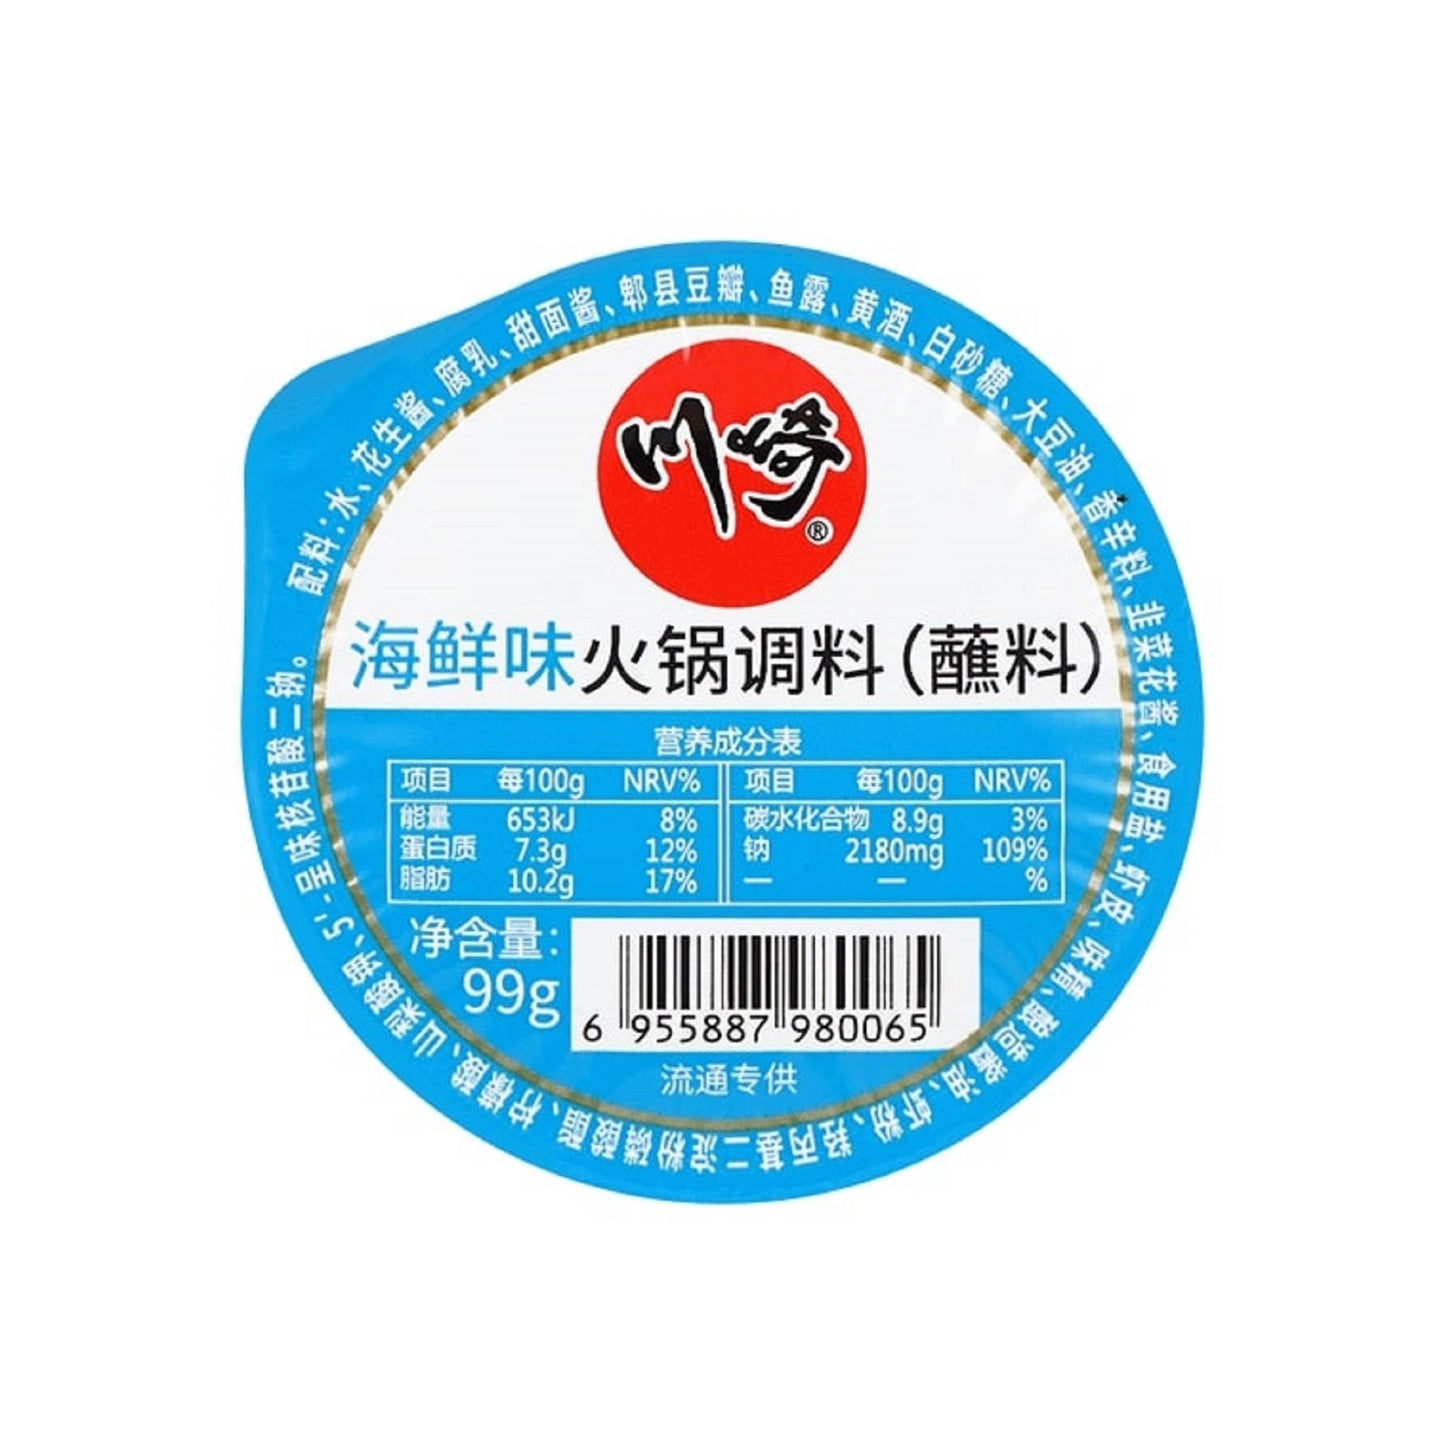 川崎美味火锅蘸料 (海鲜味) (99g)